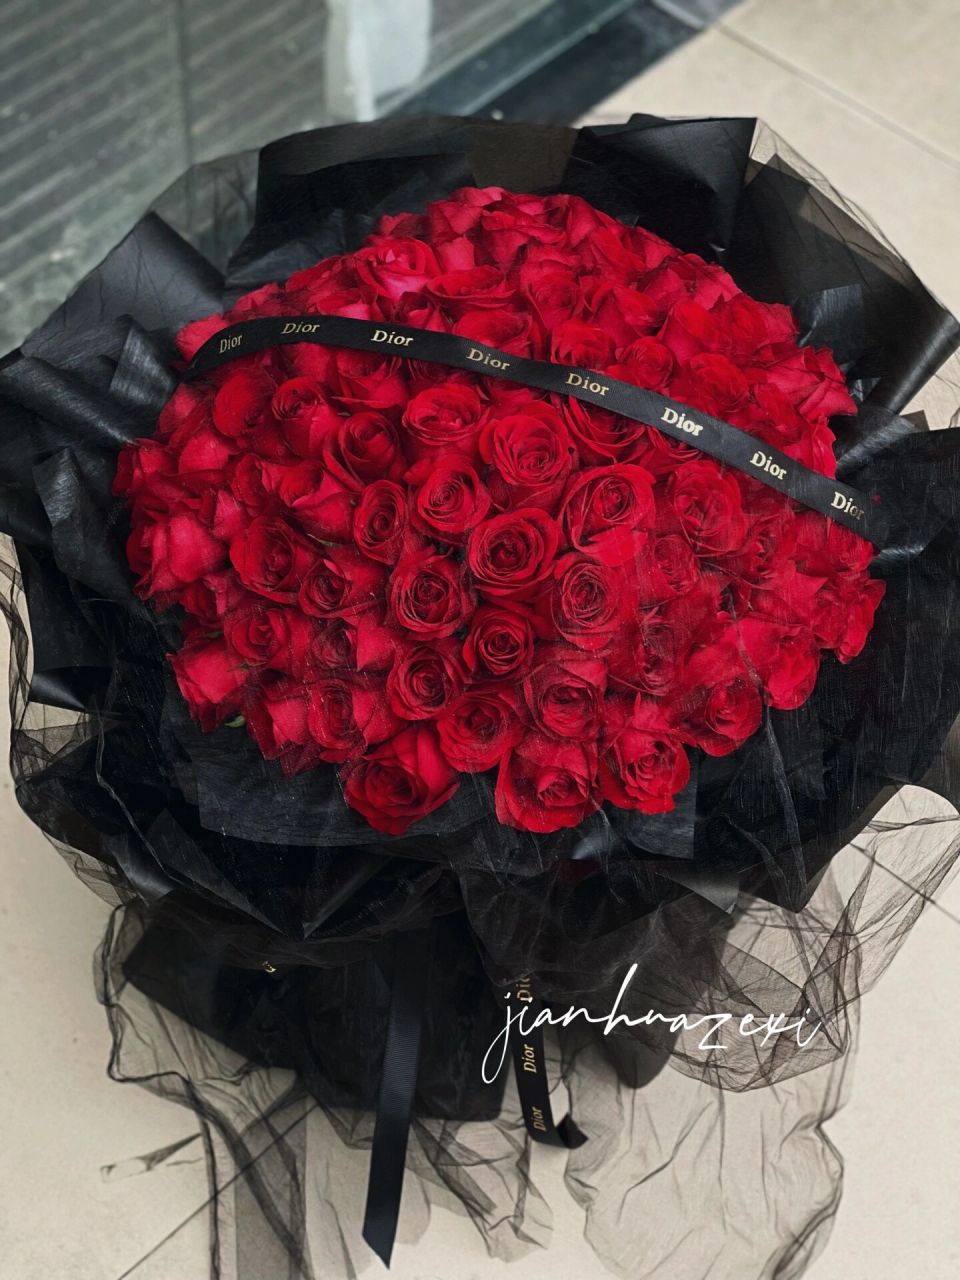 成都花店99朵红玫瑰经典花束 99朵卡罗拉红玫瑰  依然的求婚告白经典